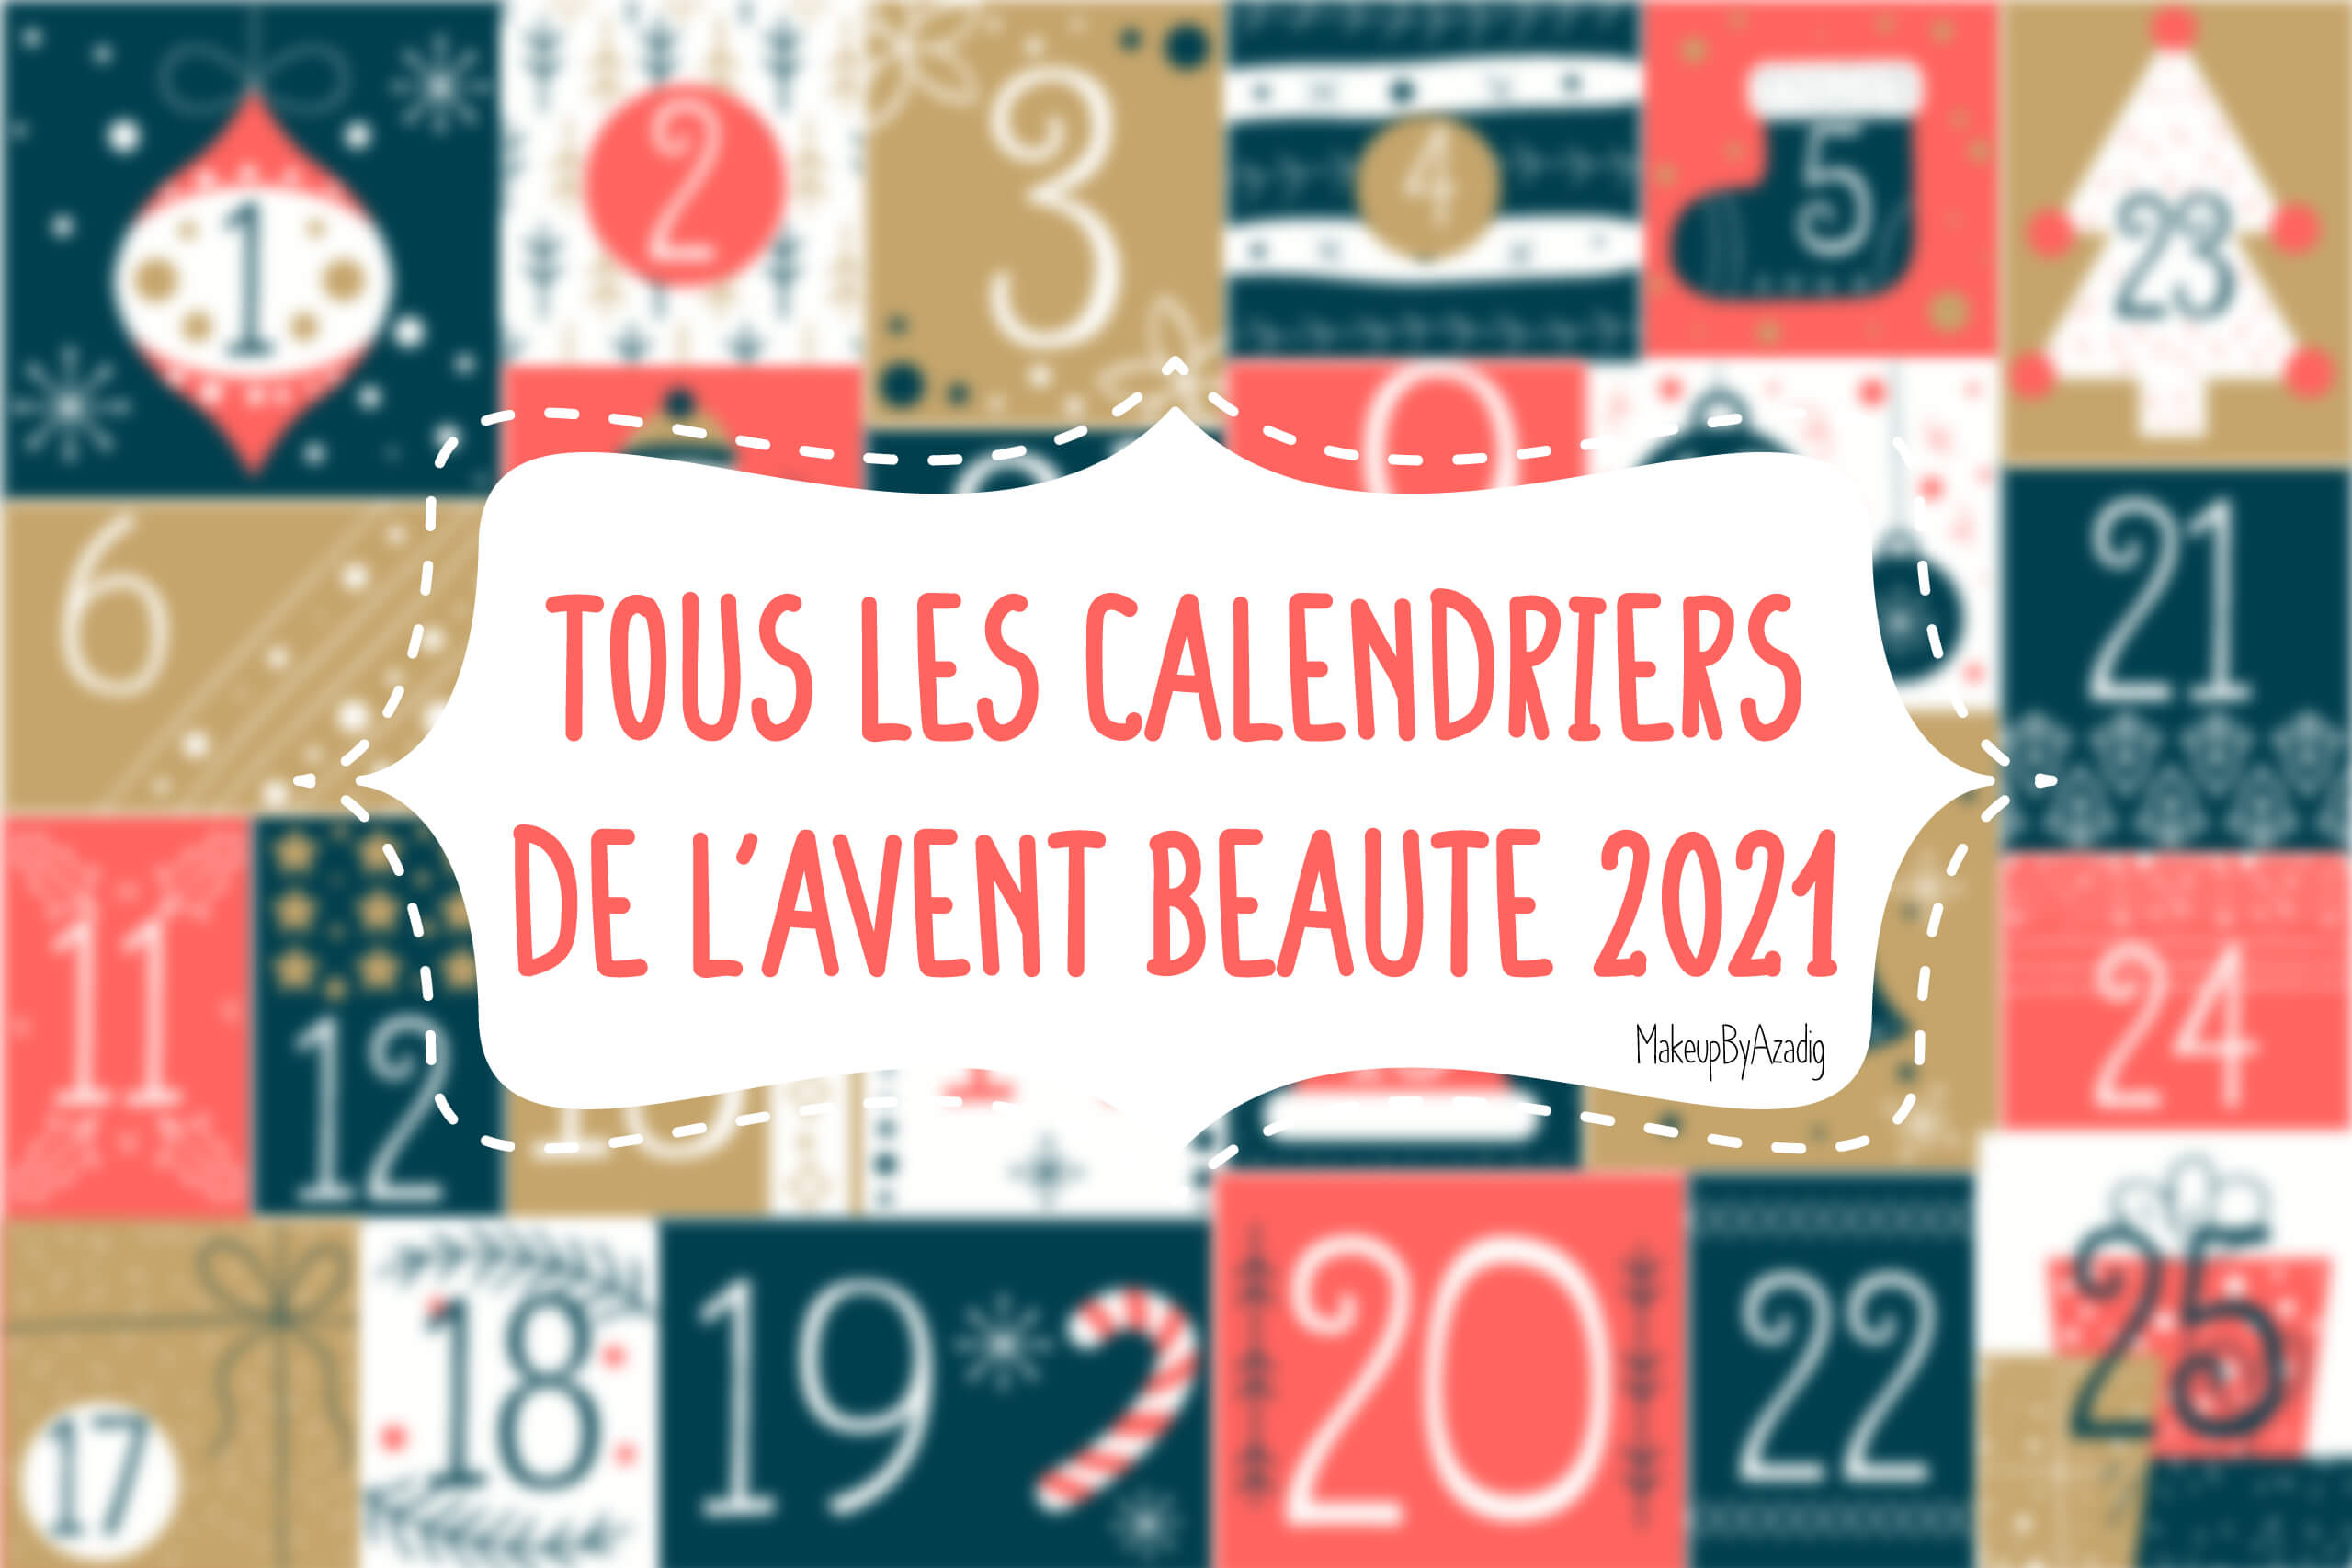 Le calendrier de l'Avent beauté 2020 de L'Oréal Paris 